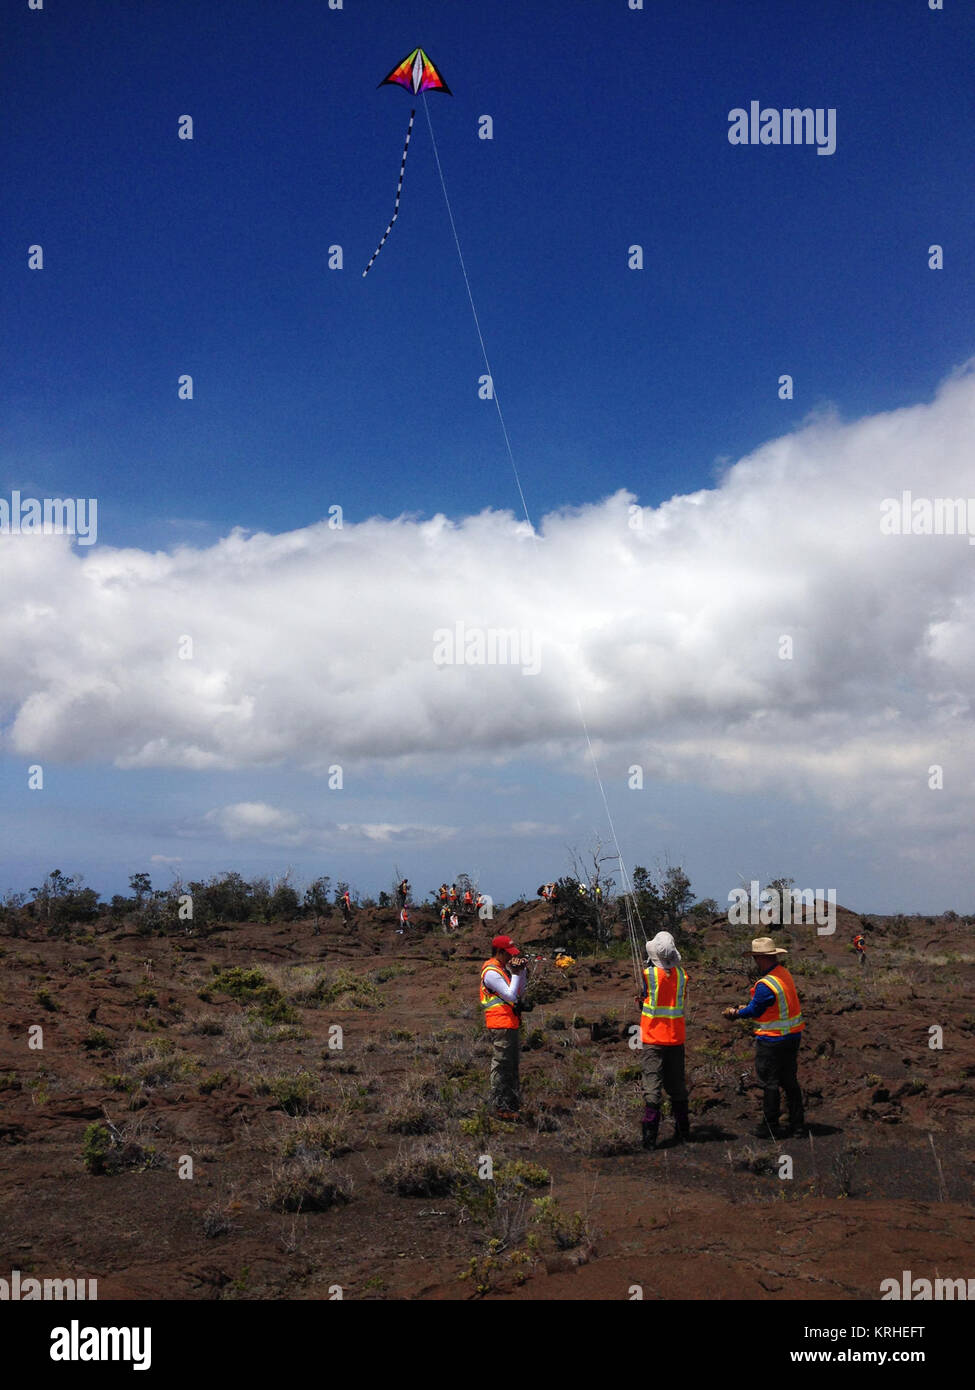 Team kite Dieser Drachen Teil des Wissenschaftlichen tool kit wurde. Es erfolgt eine Kamera, die verwendet werden können, um hochauflösende Mosaiken der Studie zu machen. Quelle: NASA/GSFC/Jakob Bleacher im Juni, fünf Studenten Journalisten aus Stony Brook University Alan Alda Zentrum für Kommunikation der Wissenschaft ihre Wanderschuhe und hydration Packs verpackt und ein NASA-finanzierten Science Team für 10 Tage auf den Lavafeldern des Kilauea, einem aktiven hawaiianischen Vulkan verbunden. Kilauea's Lavafelder sind ein idealer Ort, Geräte, die für den Einsatz auf dem Mond der Erde oder Mars entworfen, um zu prüfen, weil die vulkanische Aktivität so geformt, viel jener Terrains Stockfoto